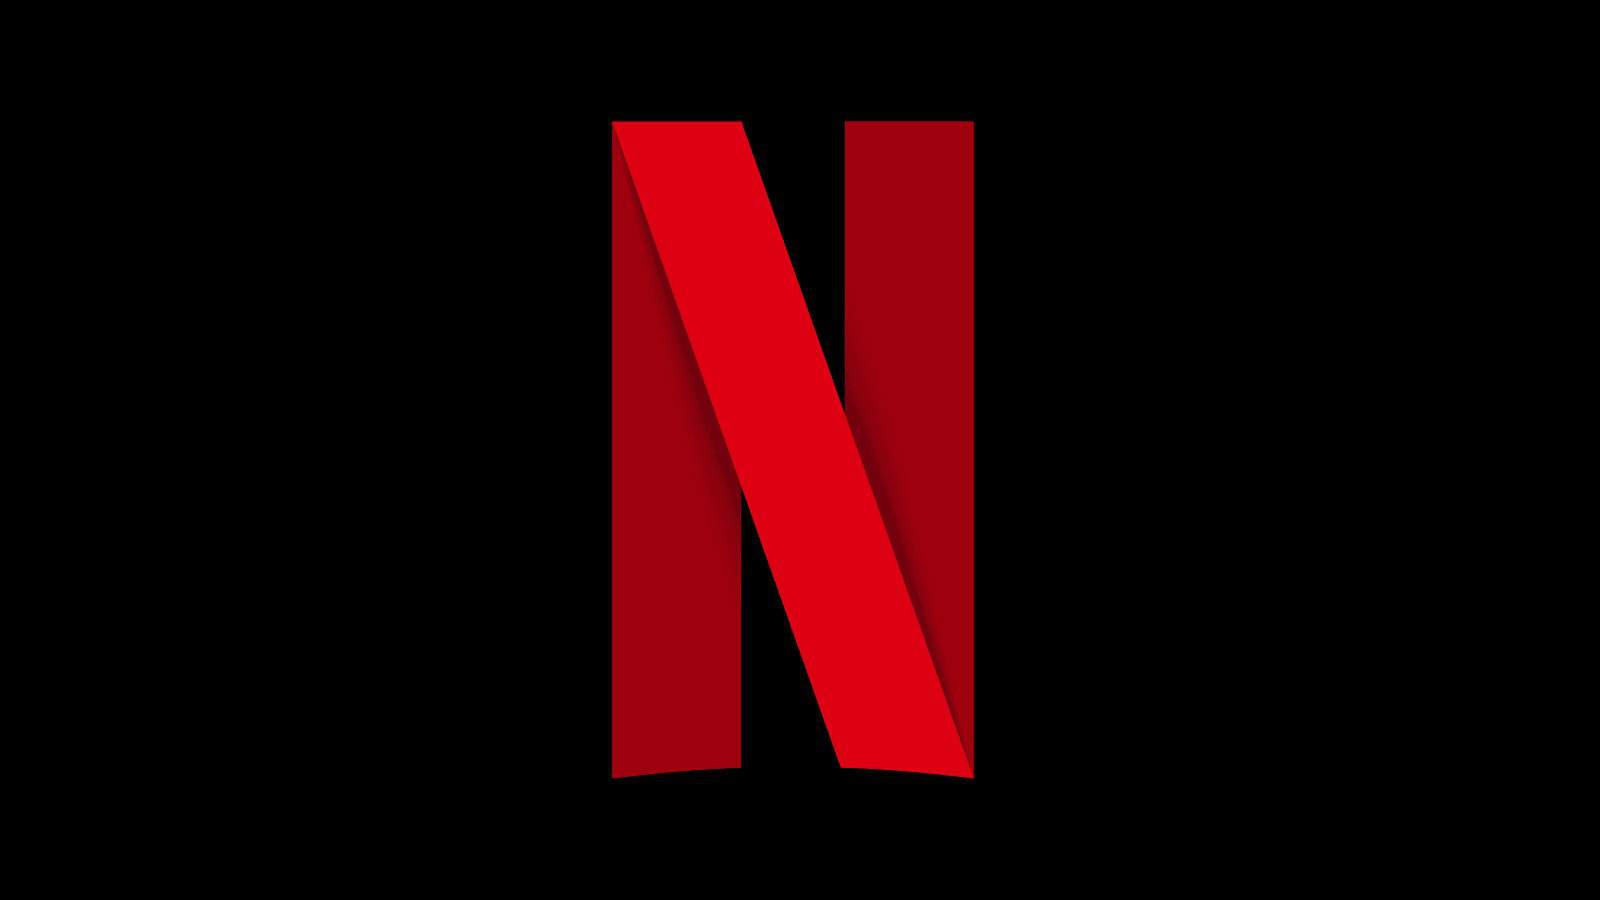 Ator da Netflix passou-se com os fans!  “Manlig utbildning!”